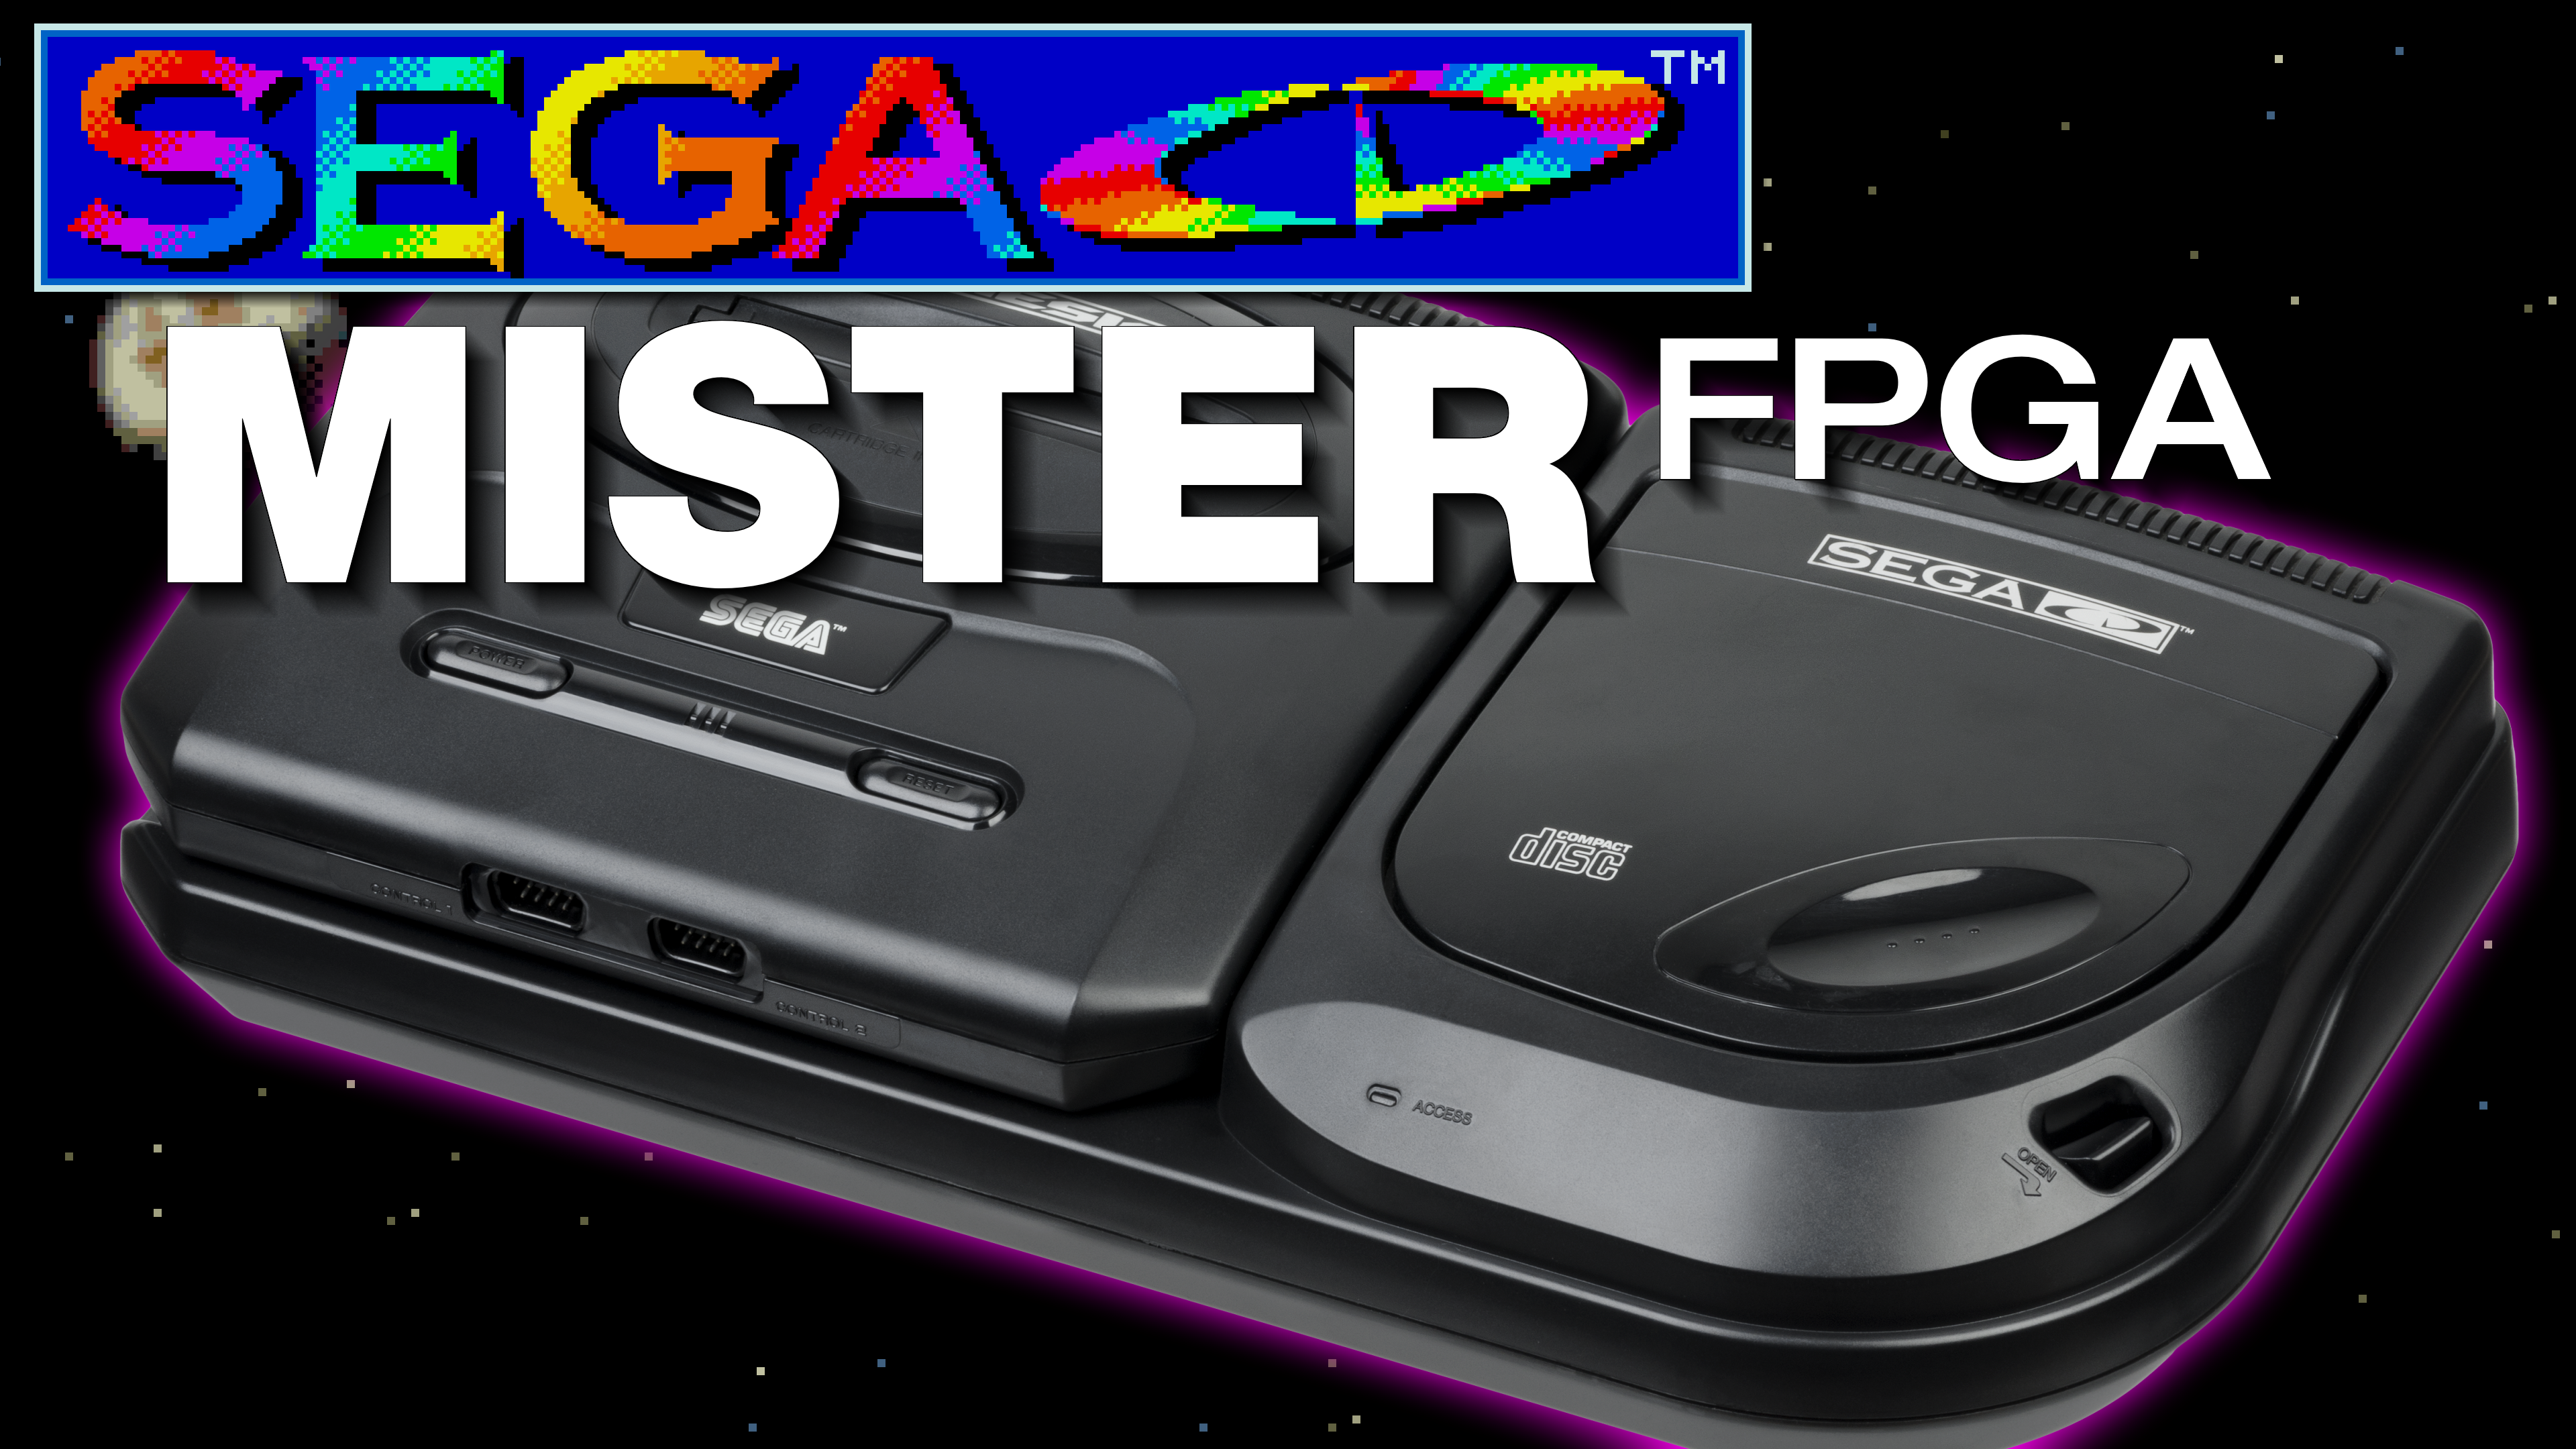 Sega CD FPGA Core for MiSTer Released by Srg320